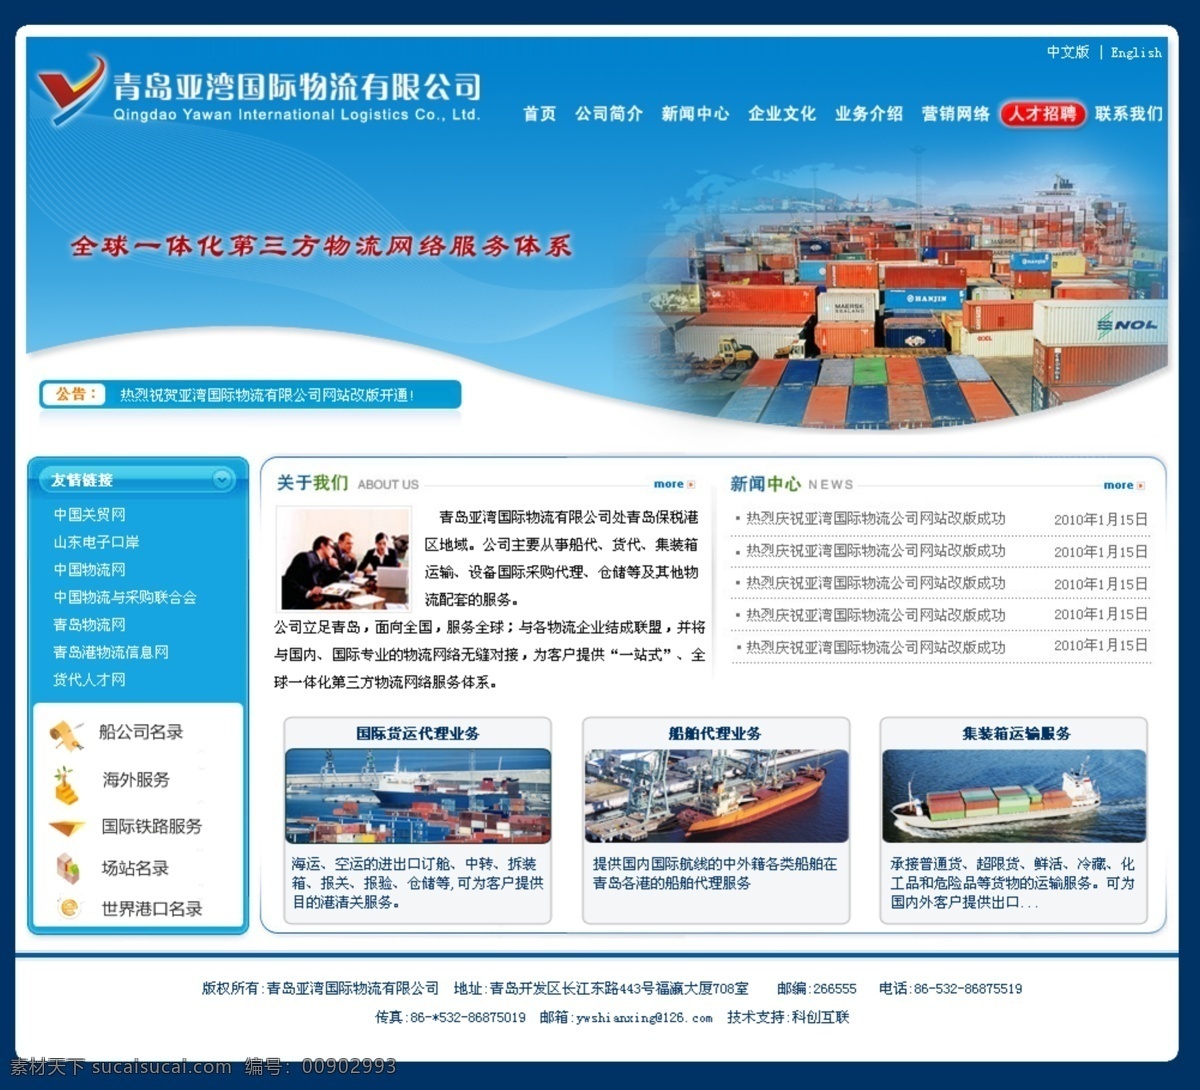 物流公司 网页模板 网站建设 源文件 中文模版 国际物流 远洋船舶 网站设计中 psd源文件